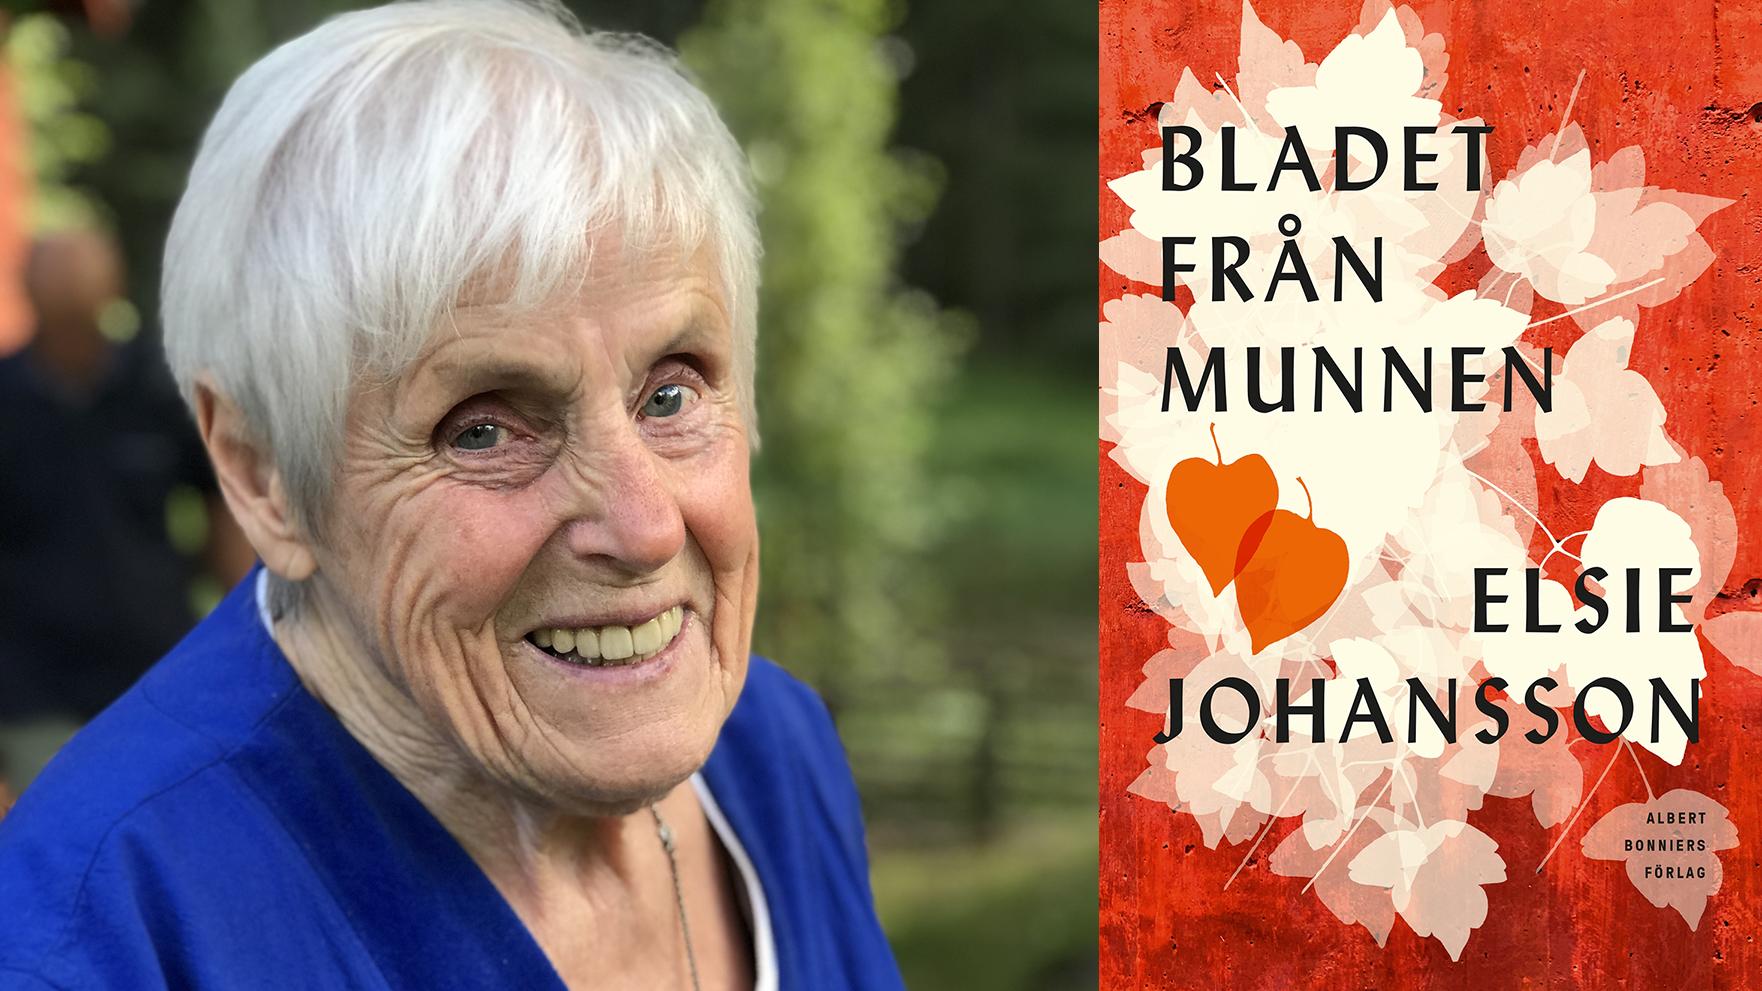 Elsie Johansson (född 1931), som debuterade 1979 och sedan dess har skrivit ett tjugotal romaner och diktsamlingar, utkommer nu med ”Ta bladet från munnen”. 